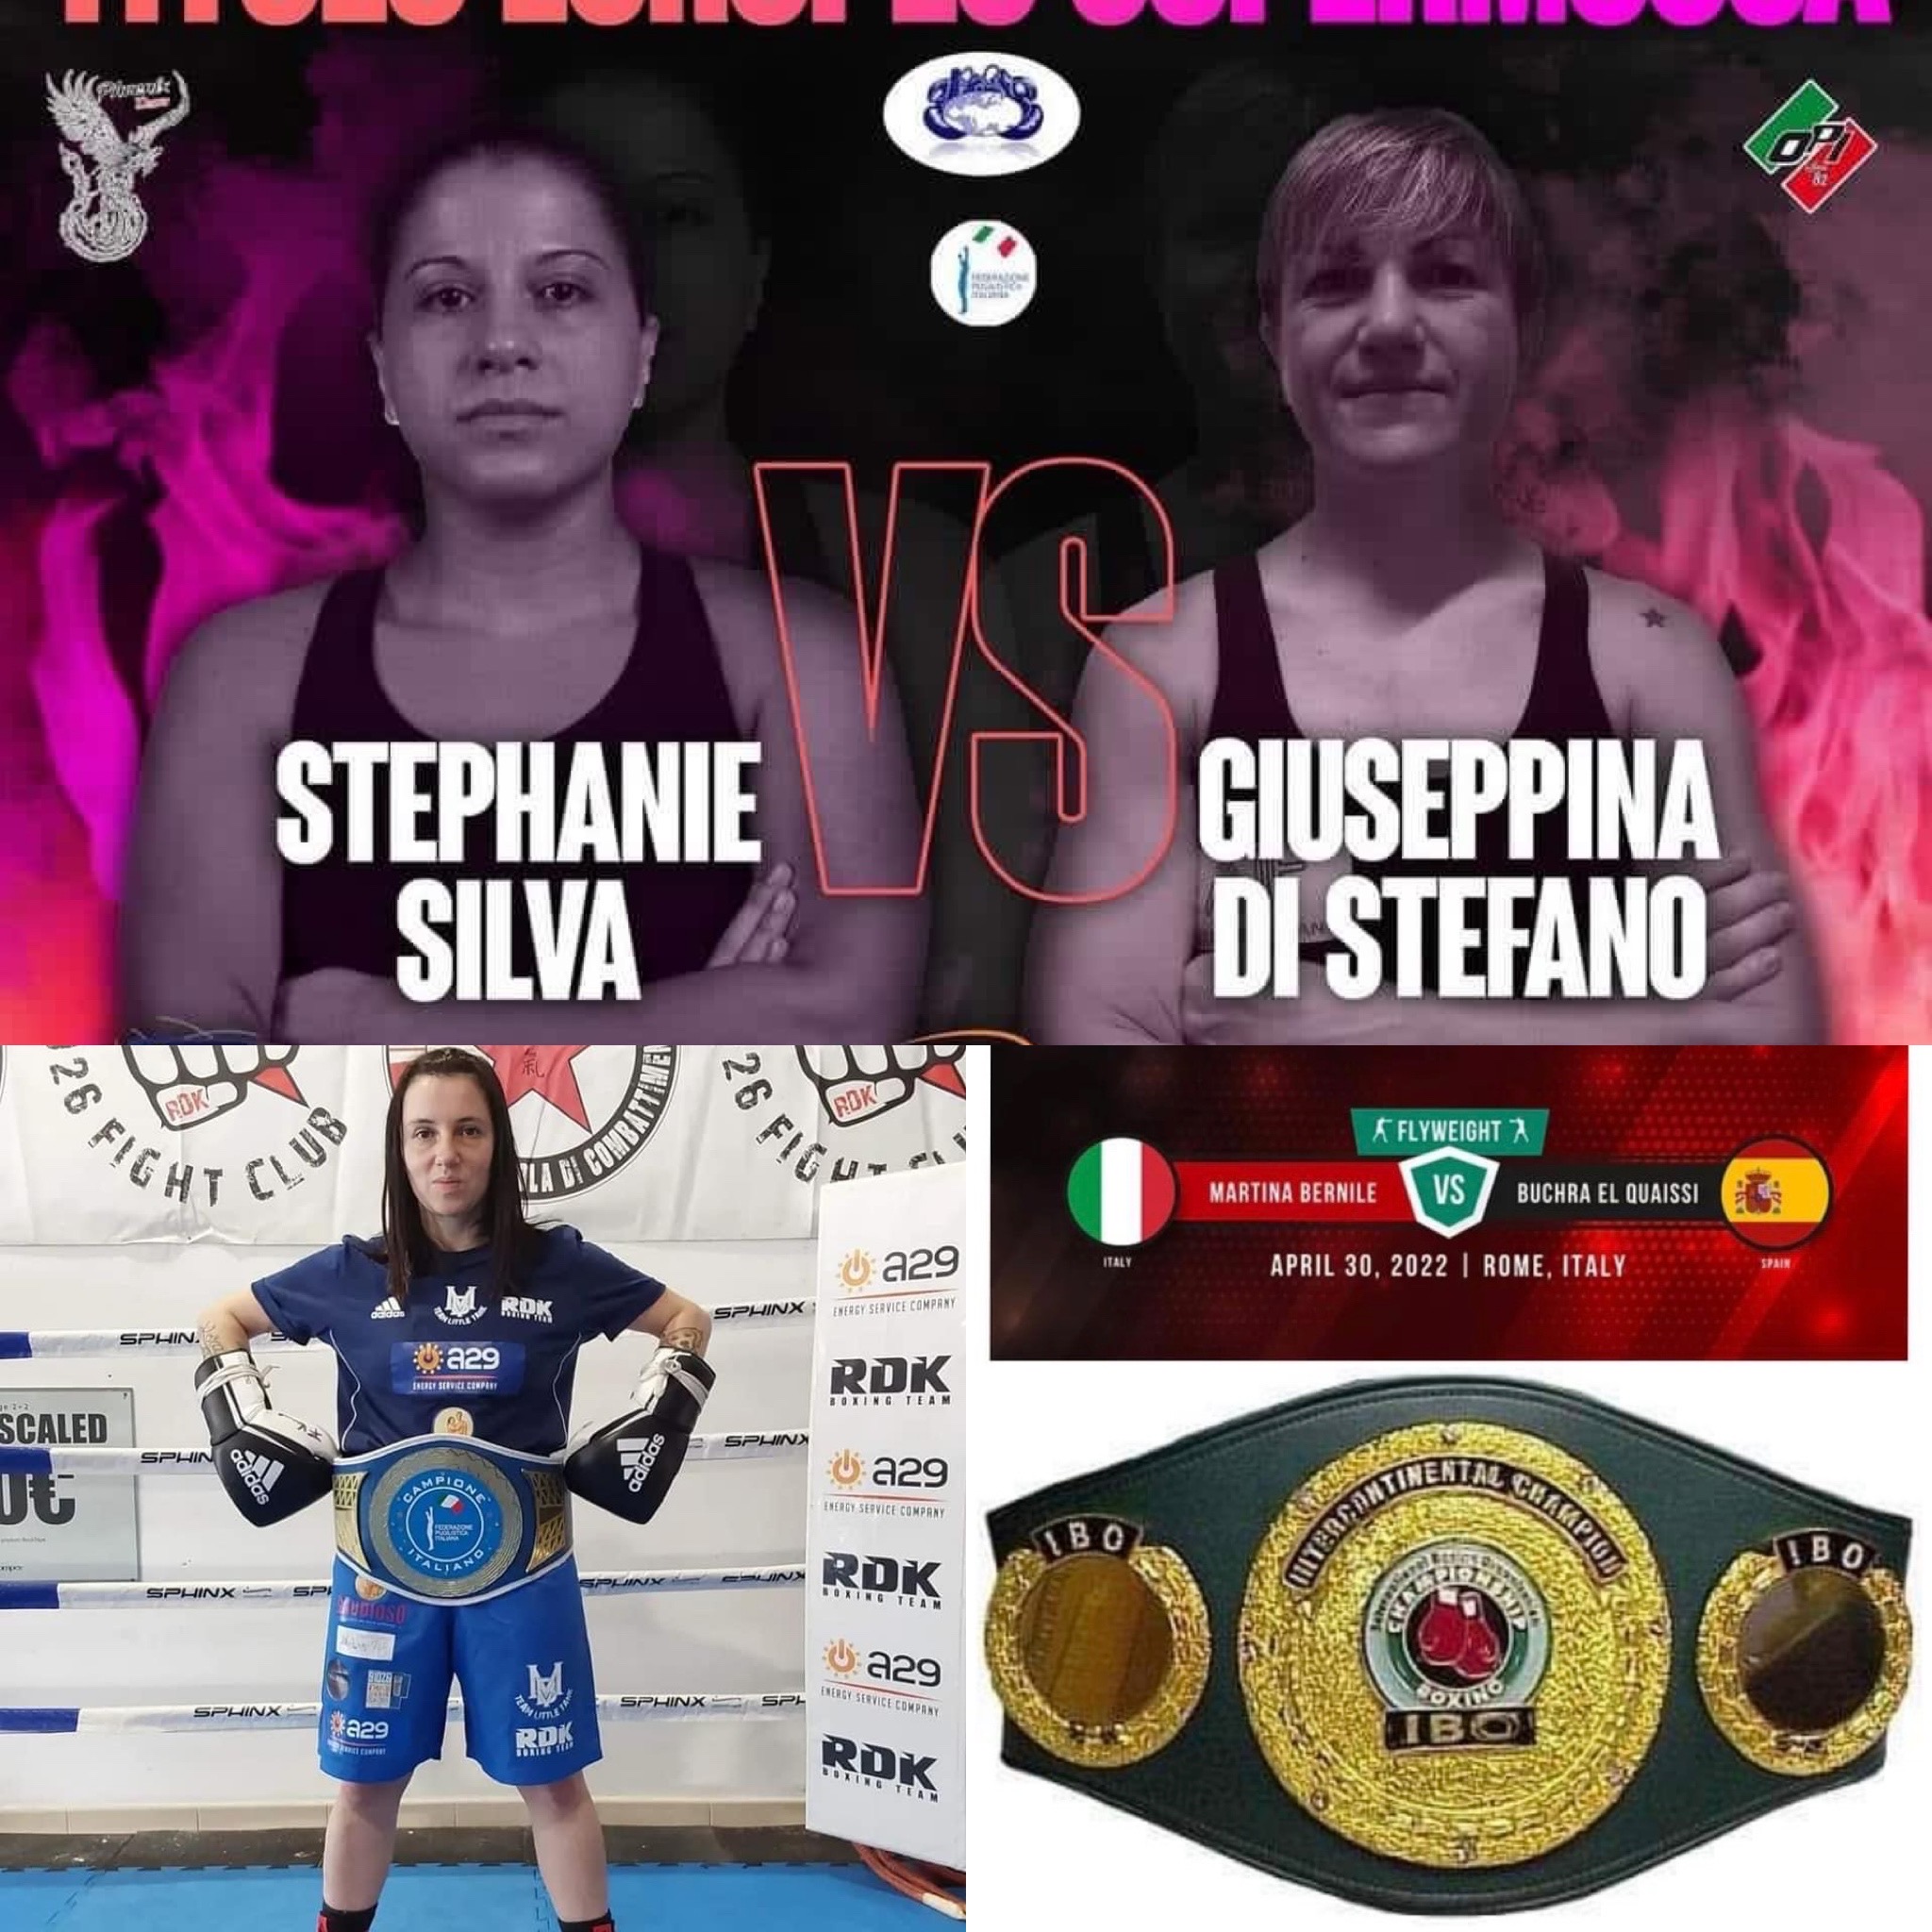 Il 30 Aprile Roma Capitale della Boxe Femminile: Silva vs Di Stefano per Euro SuperMosca, La Bernile per IBO Int. Mosca